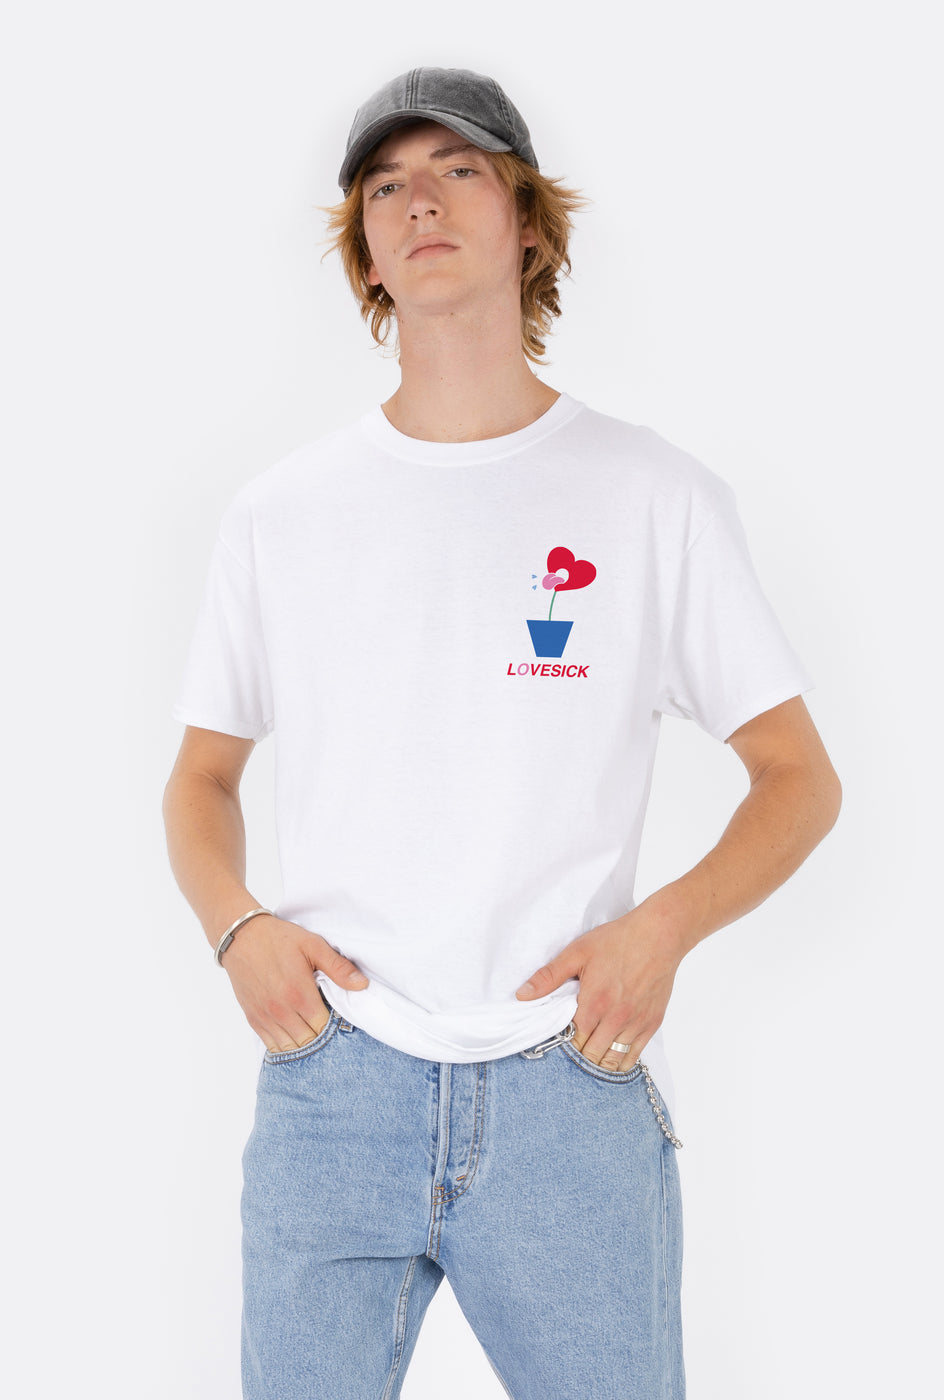 T-Shirt S/S Lovesick